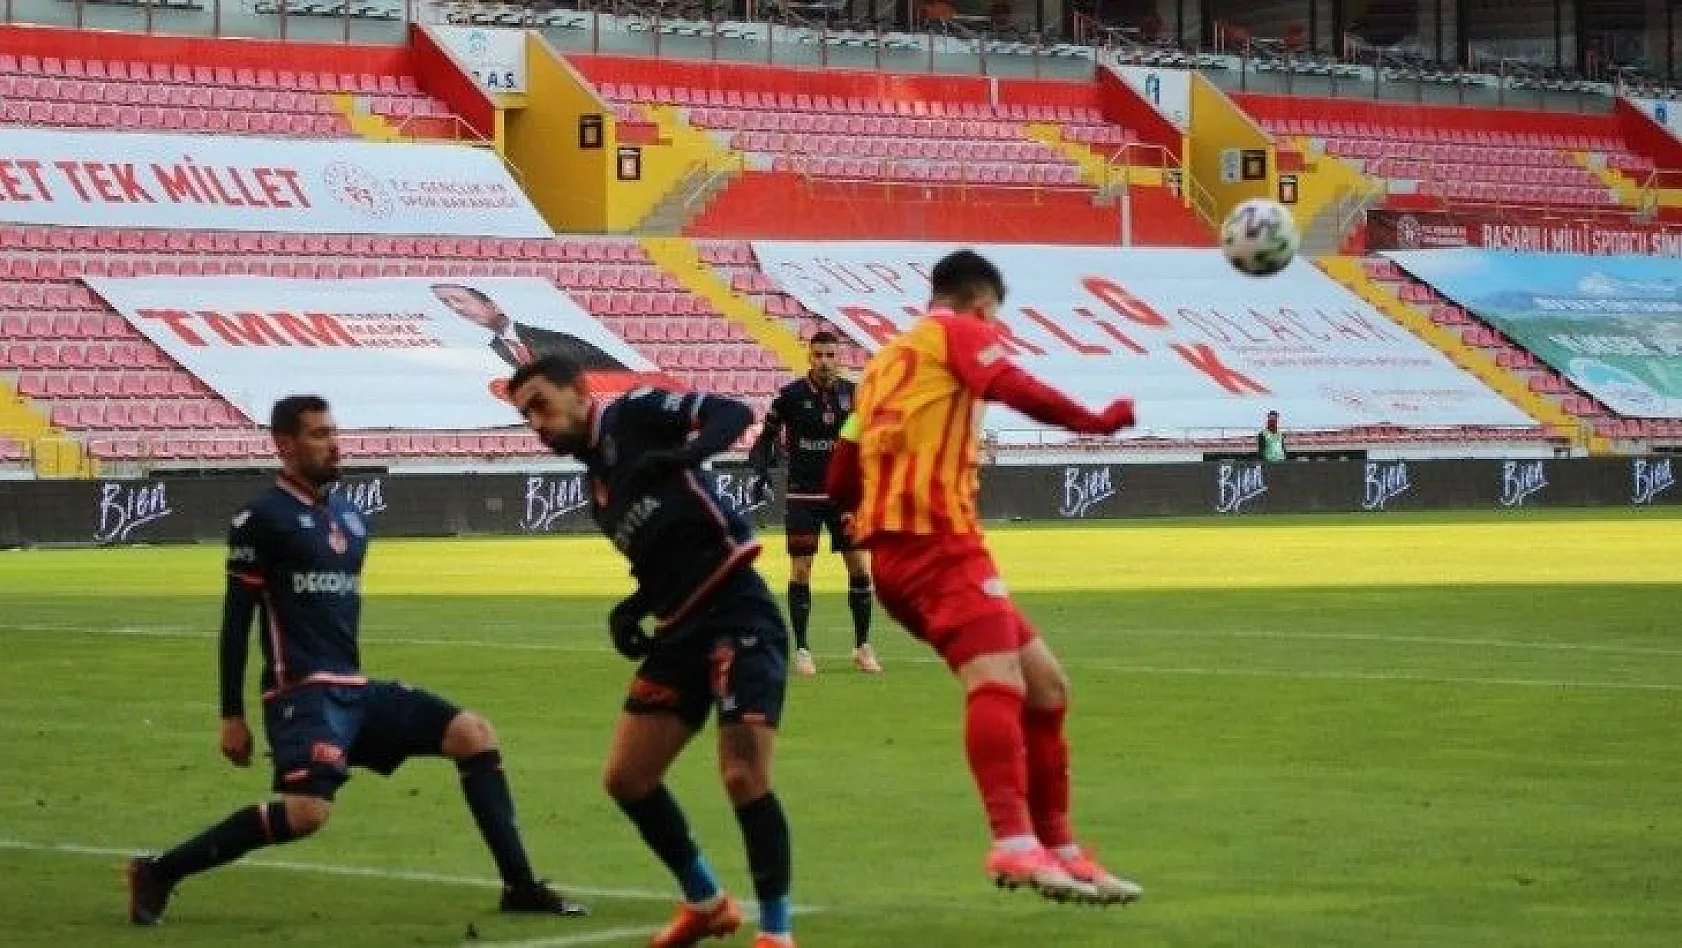 Süper Lig: Kayserispor: 2 - Medipol Başakşehir: 0 (Maç sonucu)